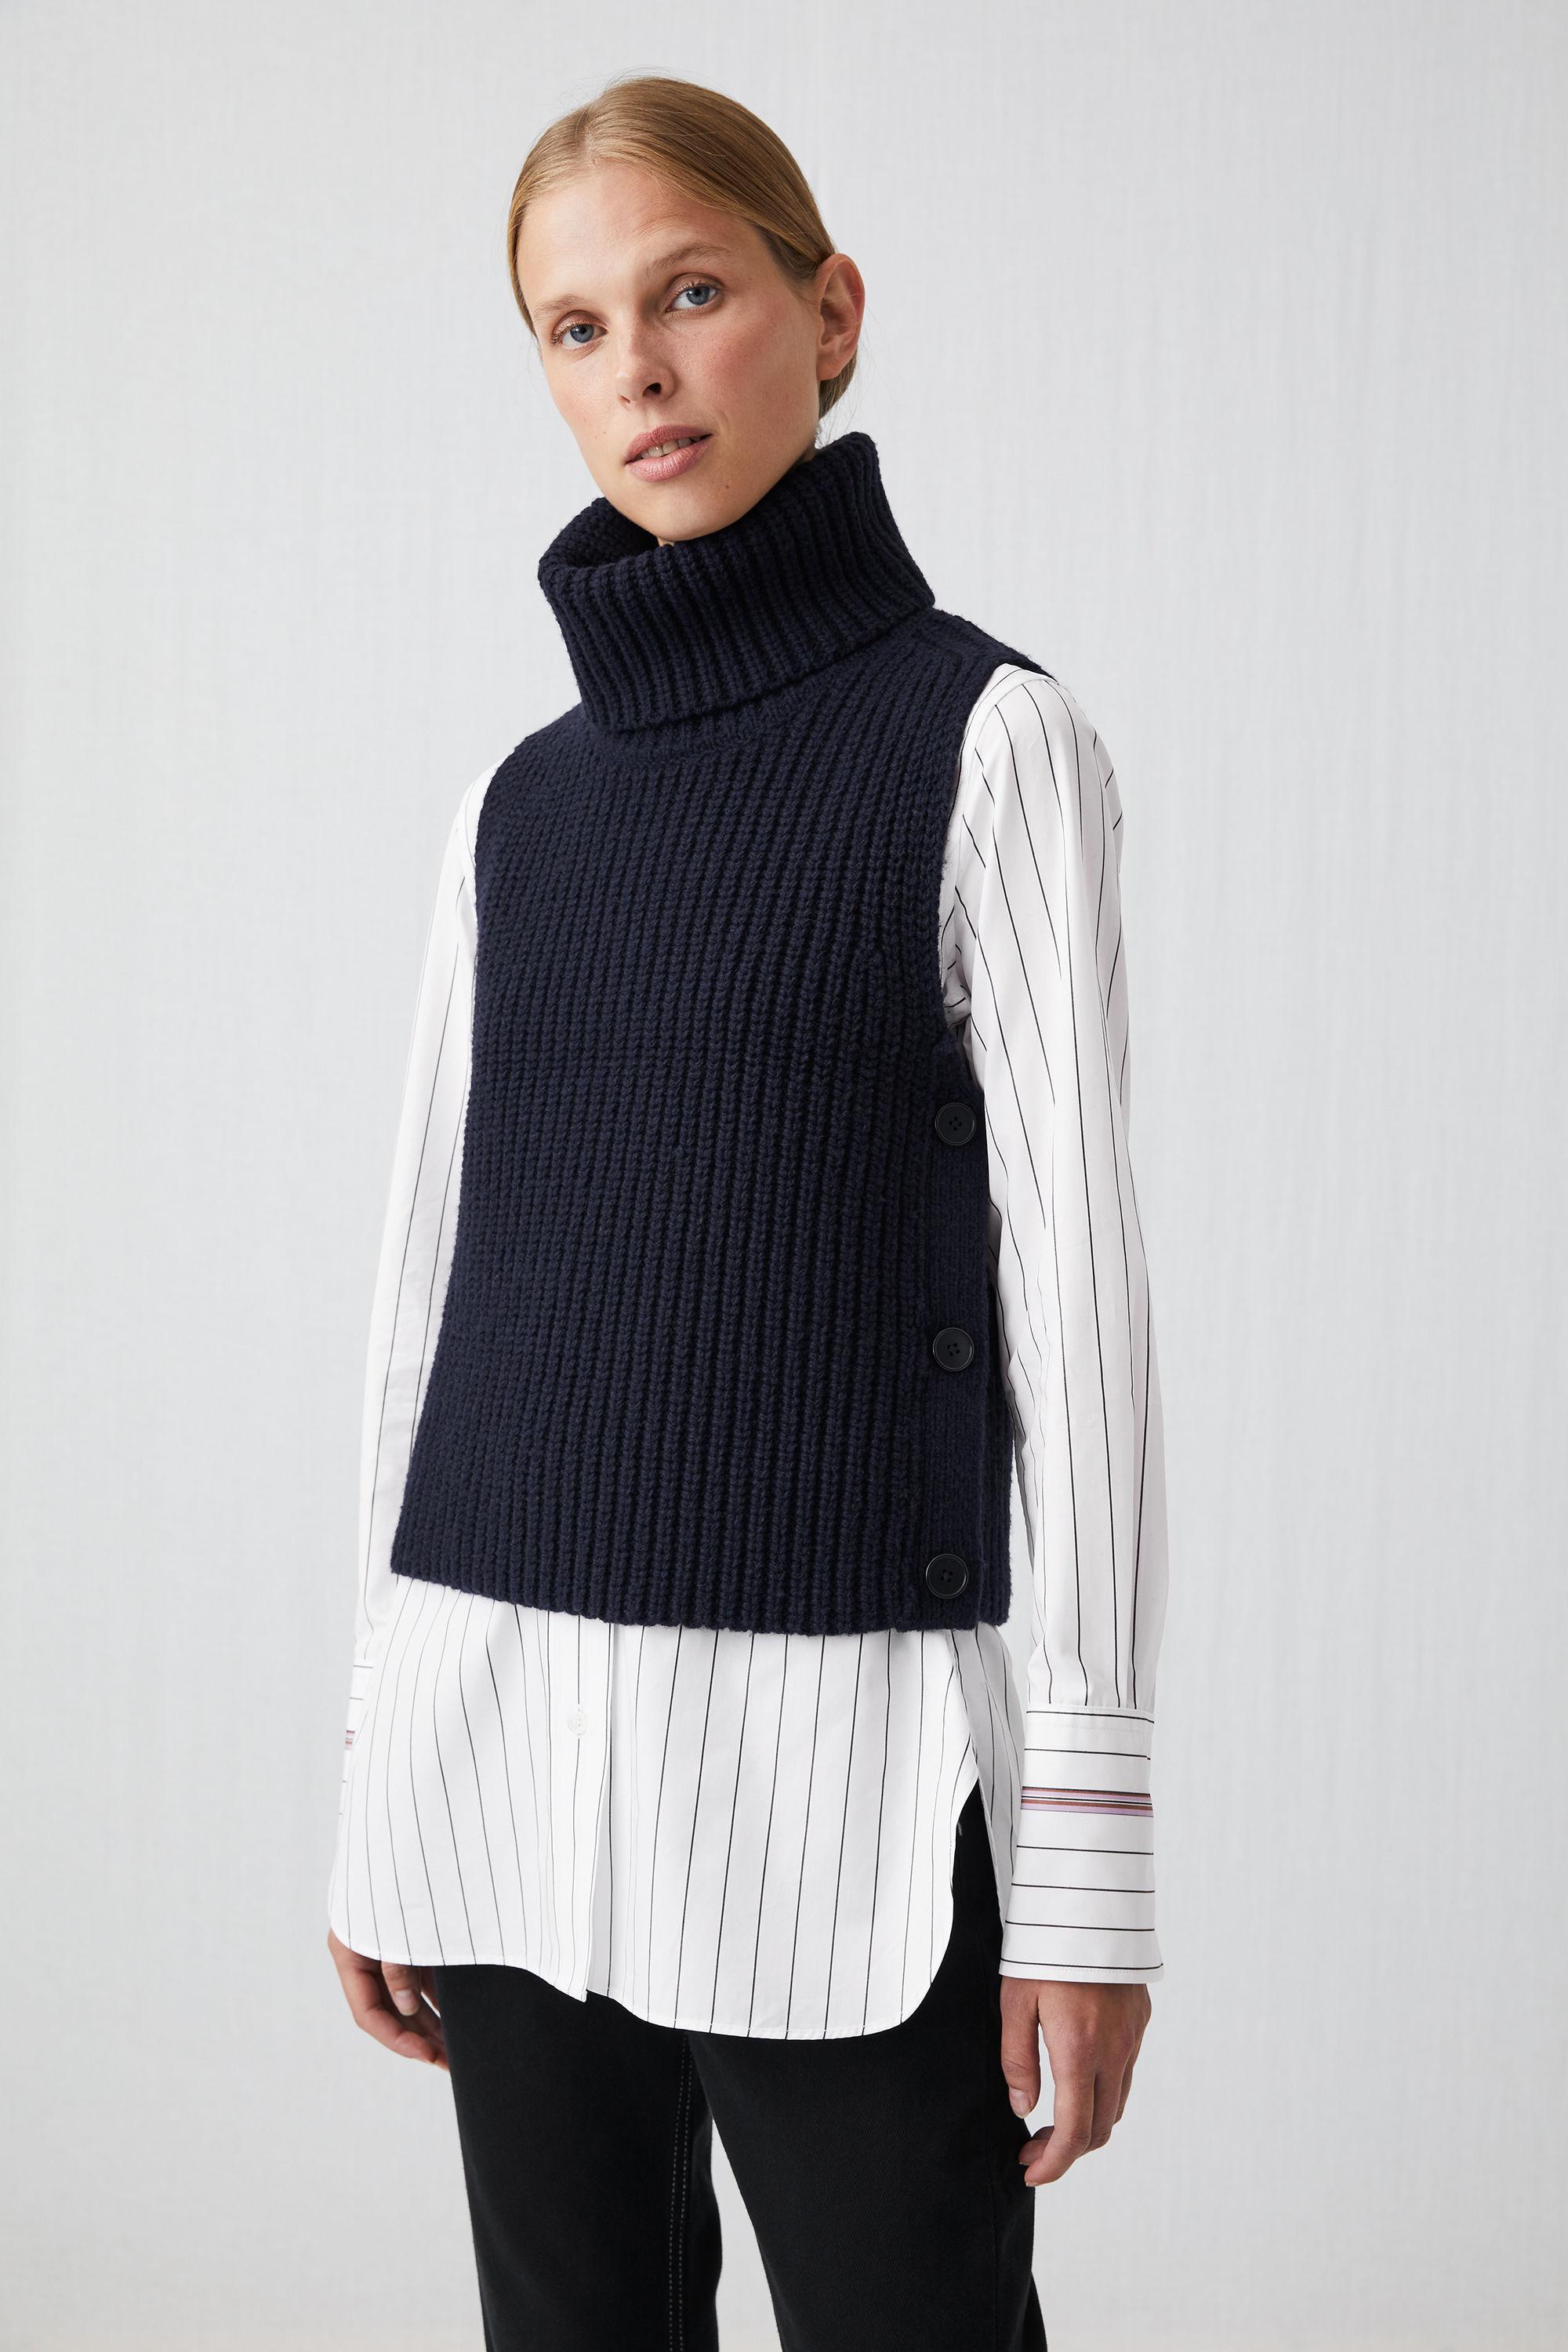 Cheap >arket jacquard knit vest big sale - OFF 65%